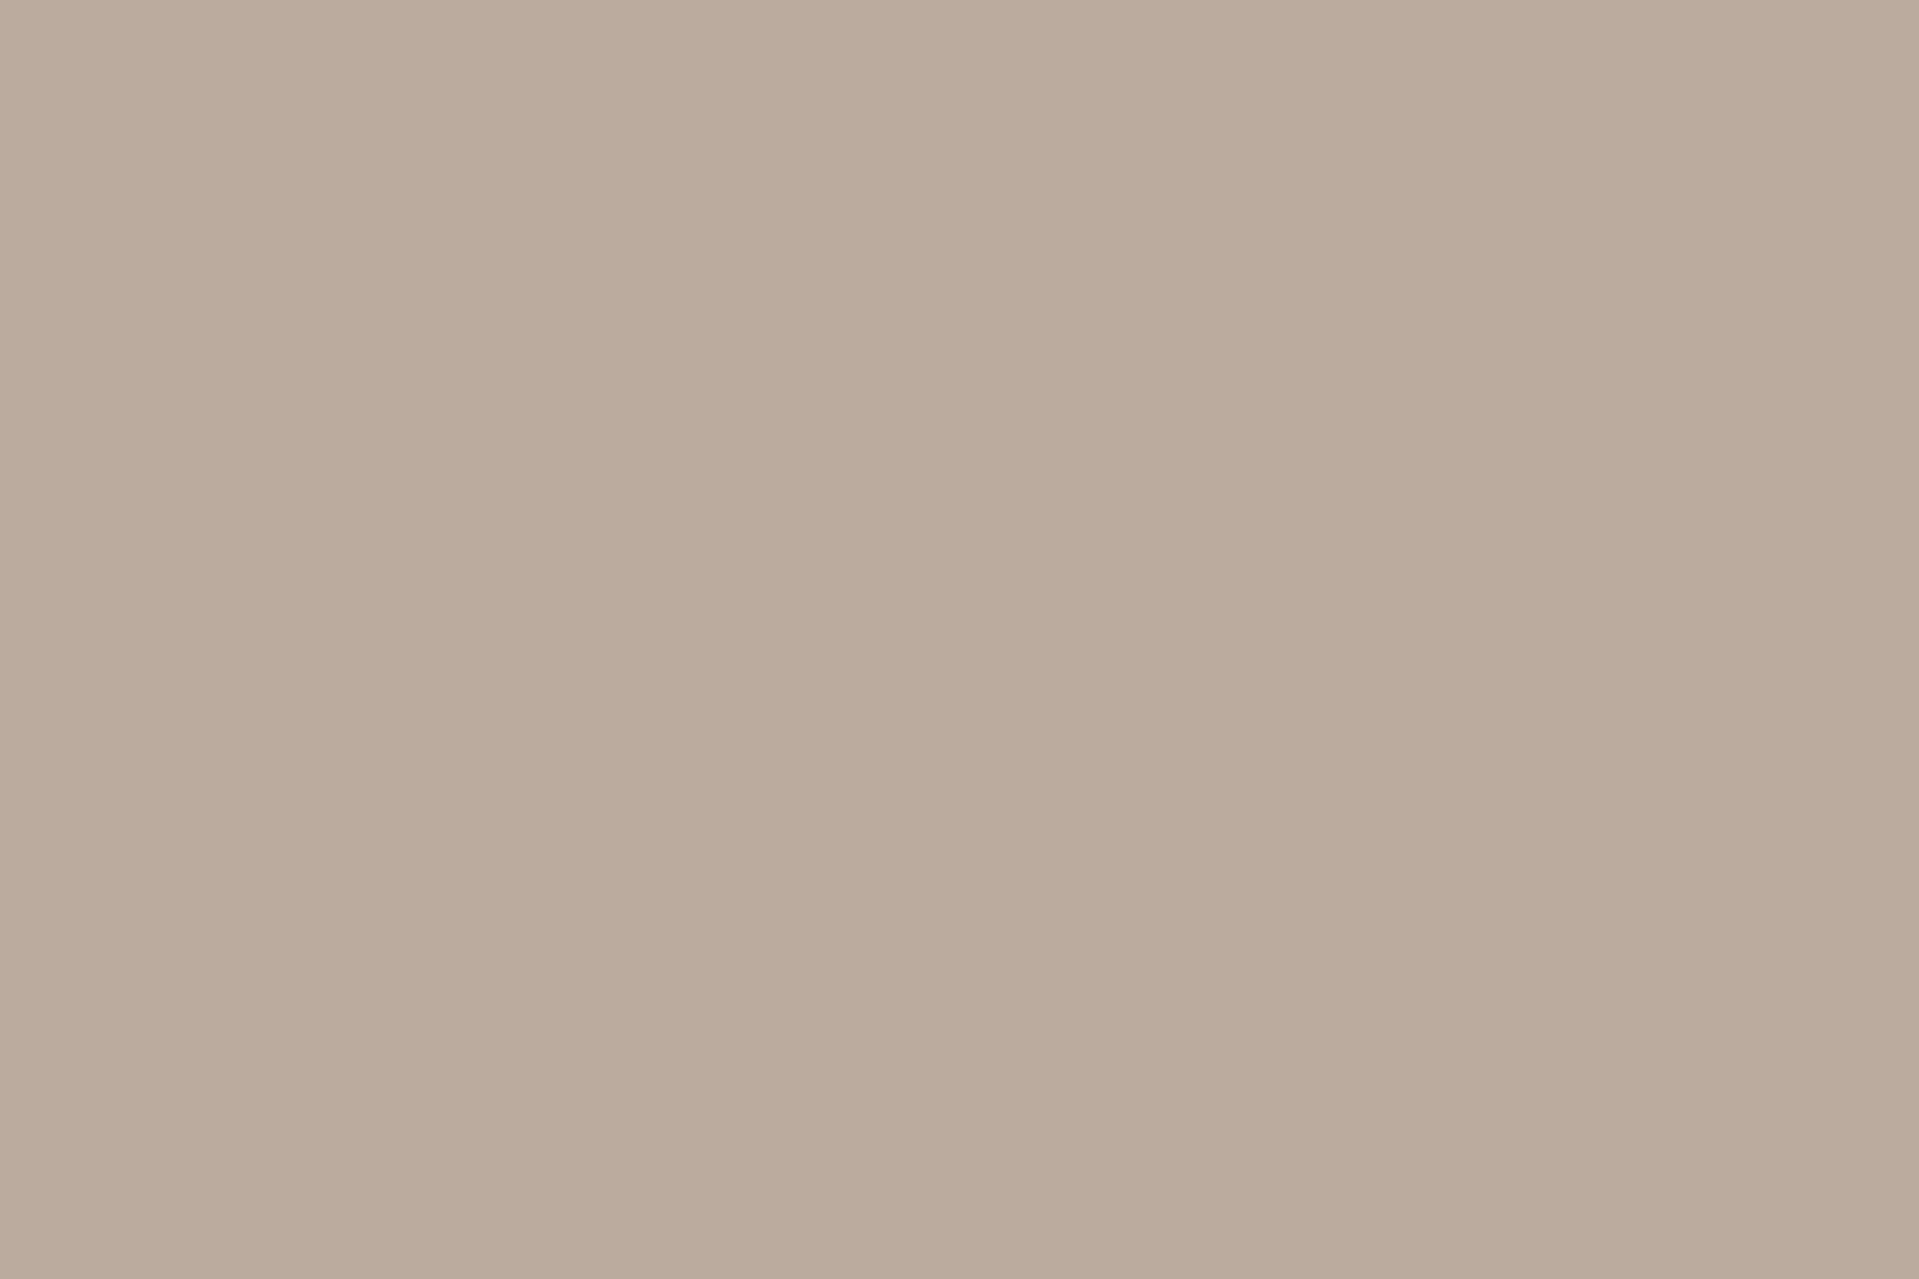 Грандиозная Всероссийская Политехническая выставка в Манеже, Москва. 1872. Фотография: <a href="https://shm.ru/petertf/" target="_blank" rel="noopener">shm.ru</a>